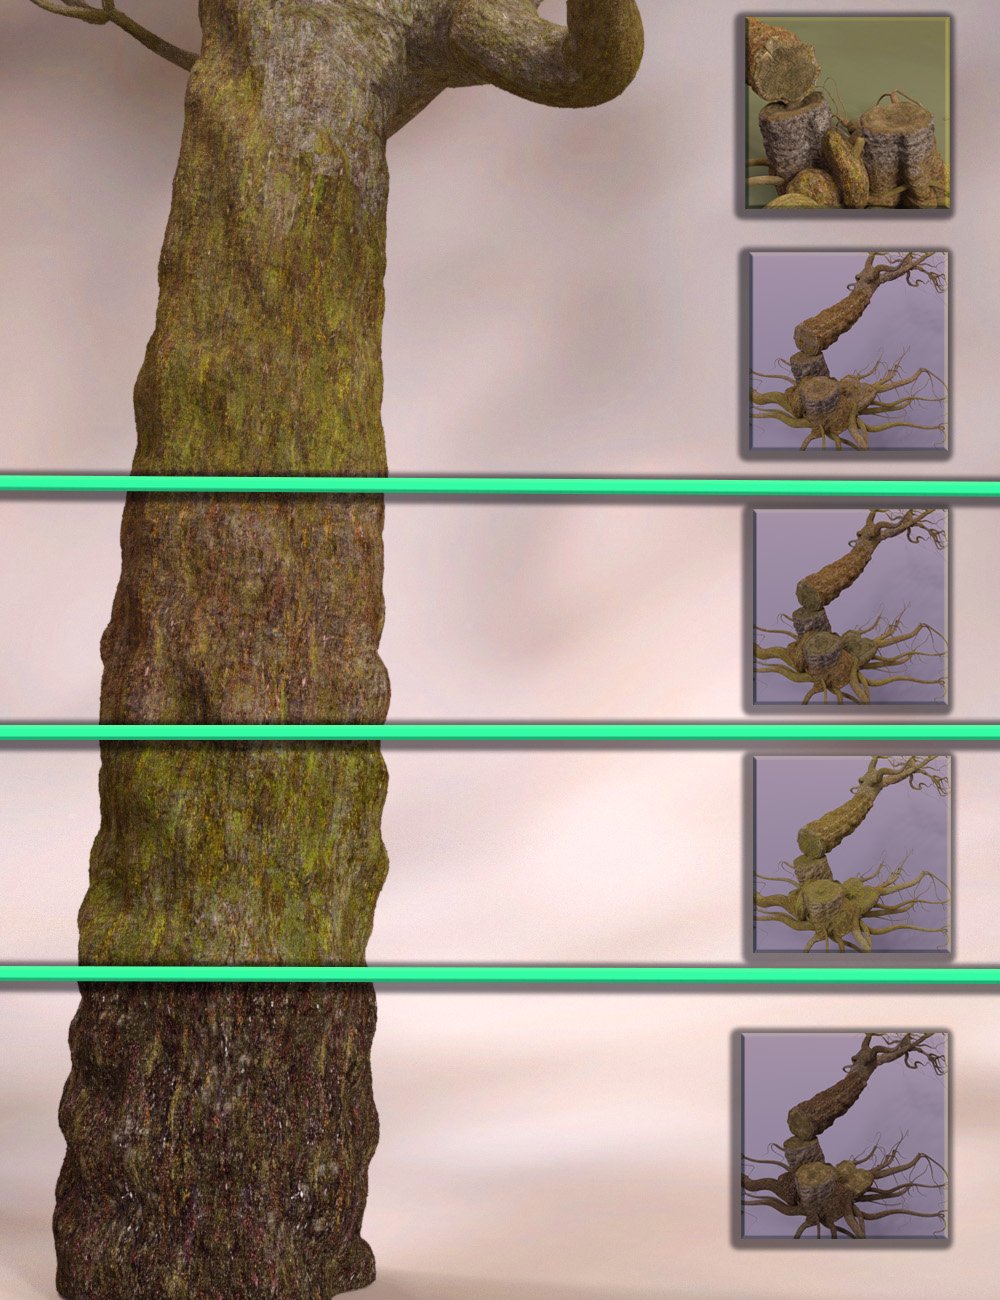 Tanglewood Stumpery - Fairy Tale Tree Stumps, Dead and Fallen Trees by: MartinJFrost, 3D Models by Daz 3D